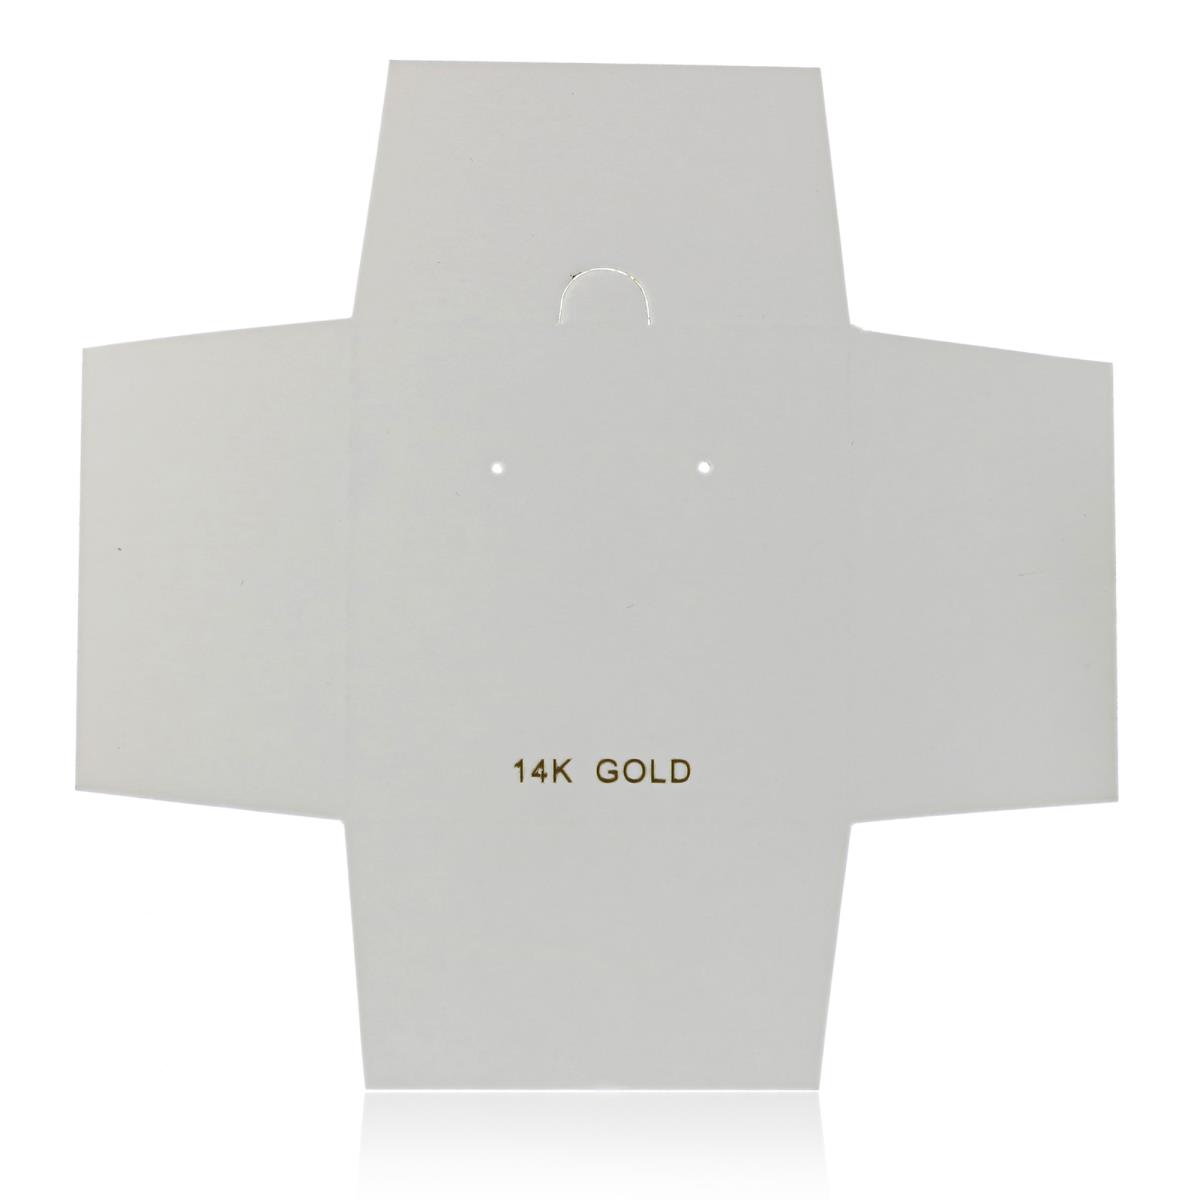 14K Gold 64x64x43mm Art Paper 1 Pair of Studs Box Insert